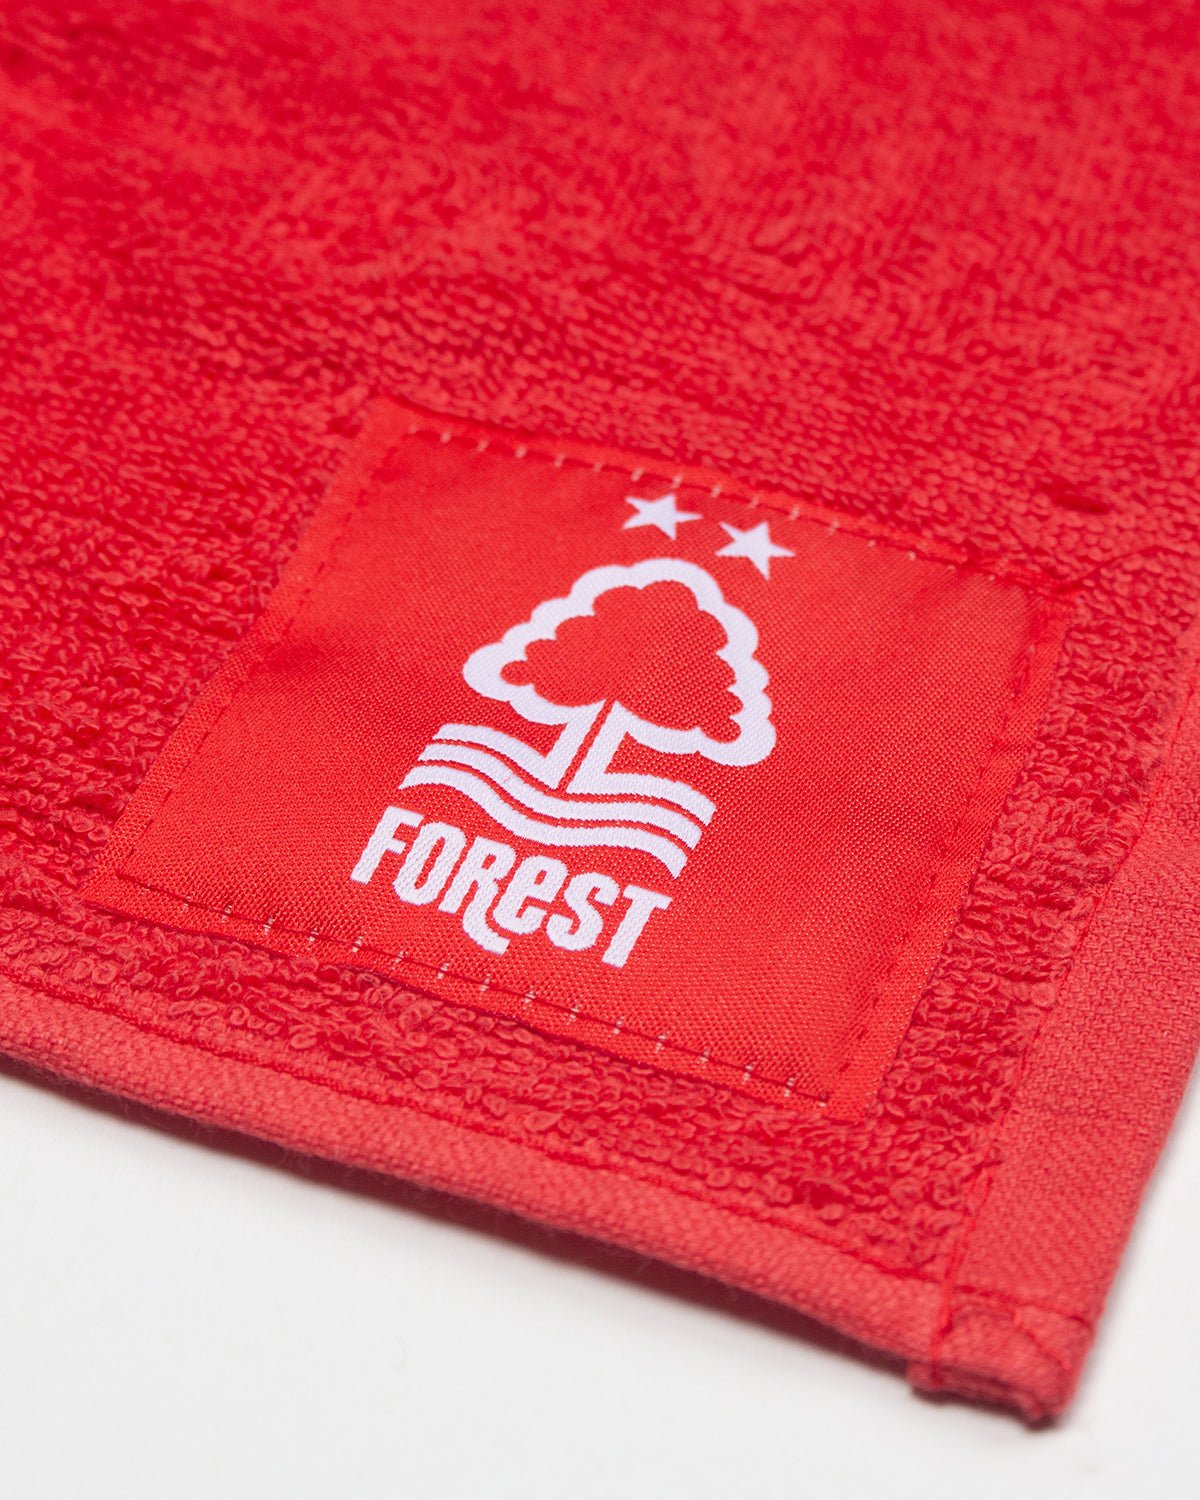 NFFC Bar Gift Set - Nottingham Forest FC